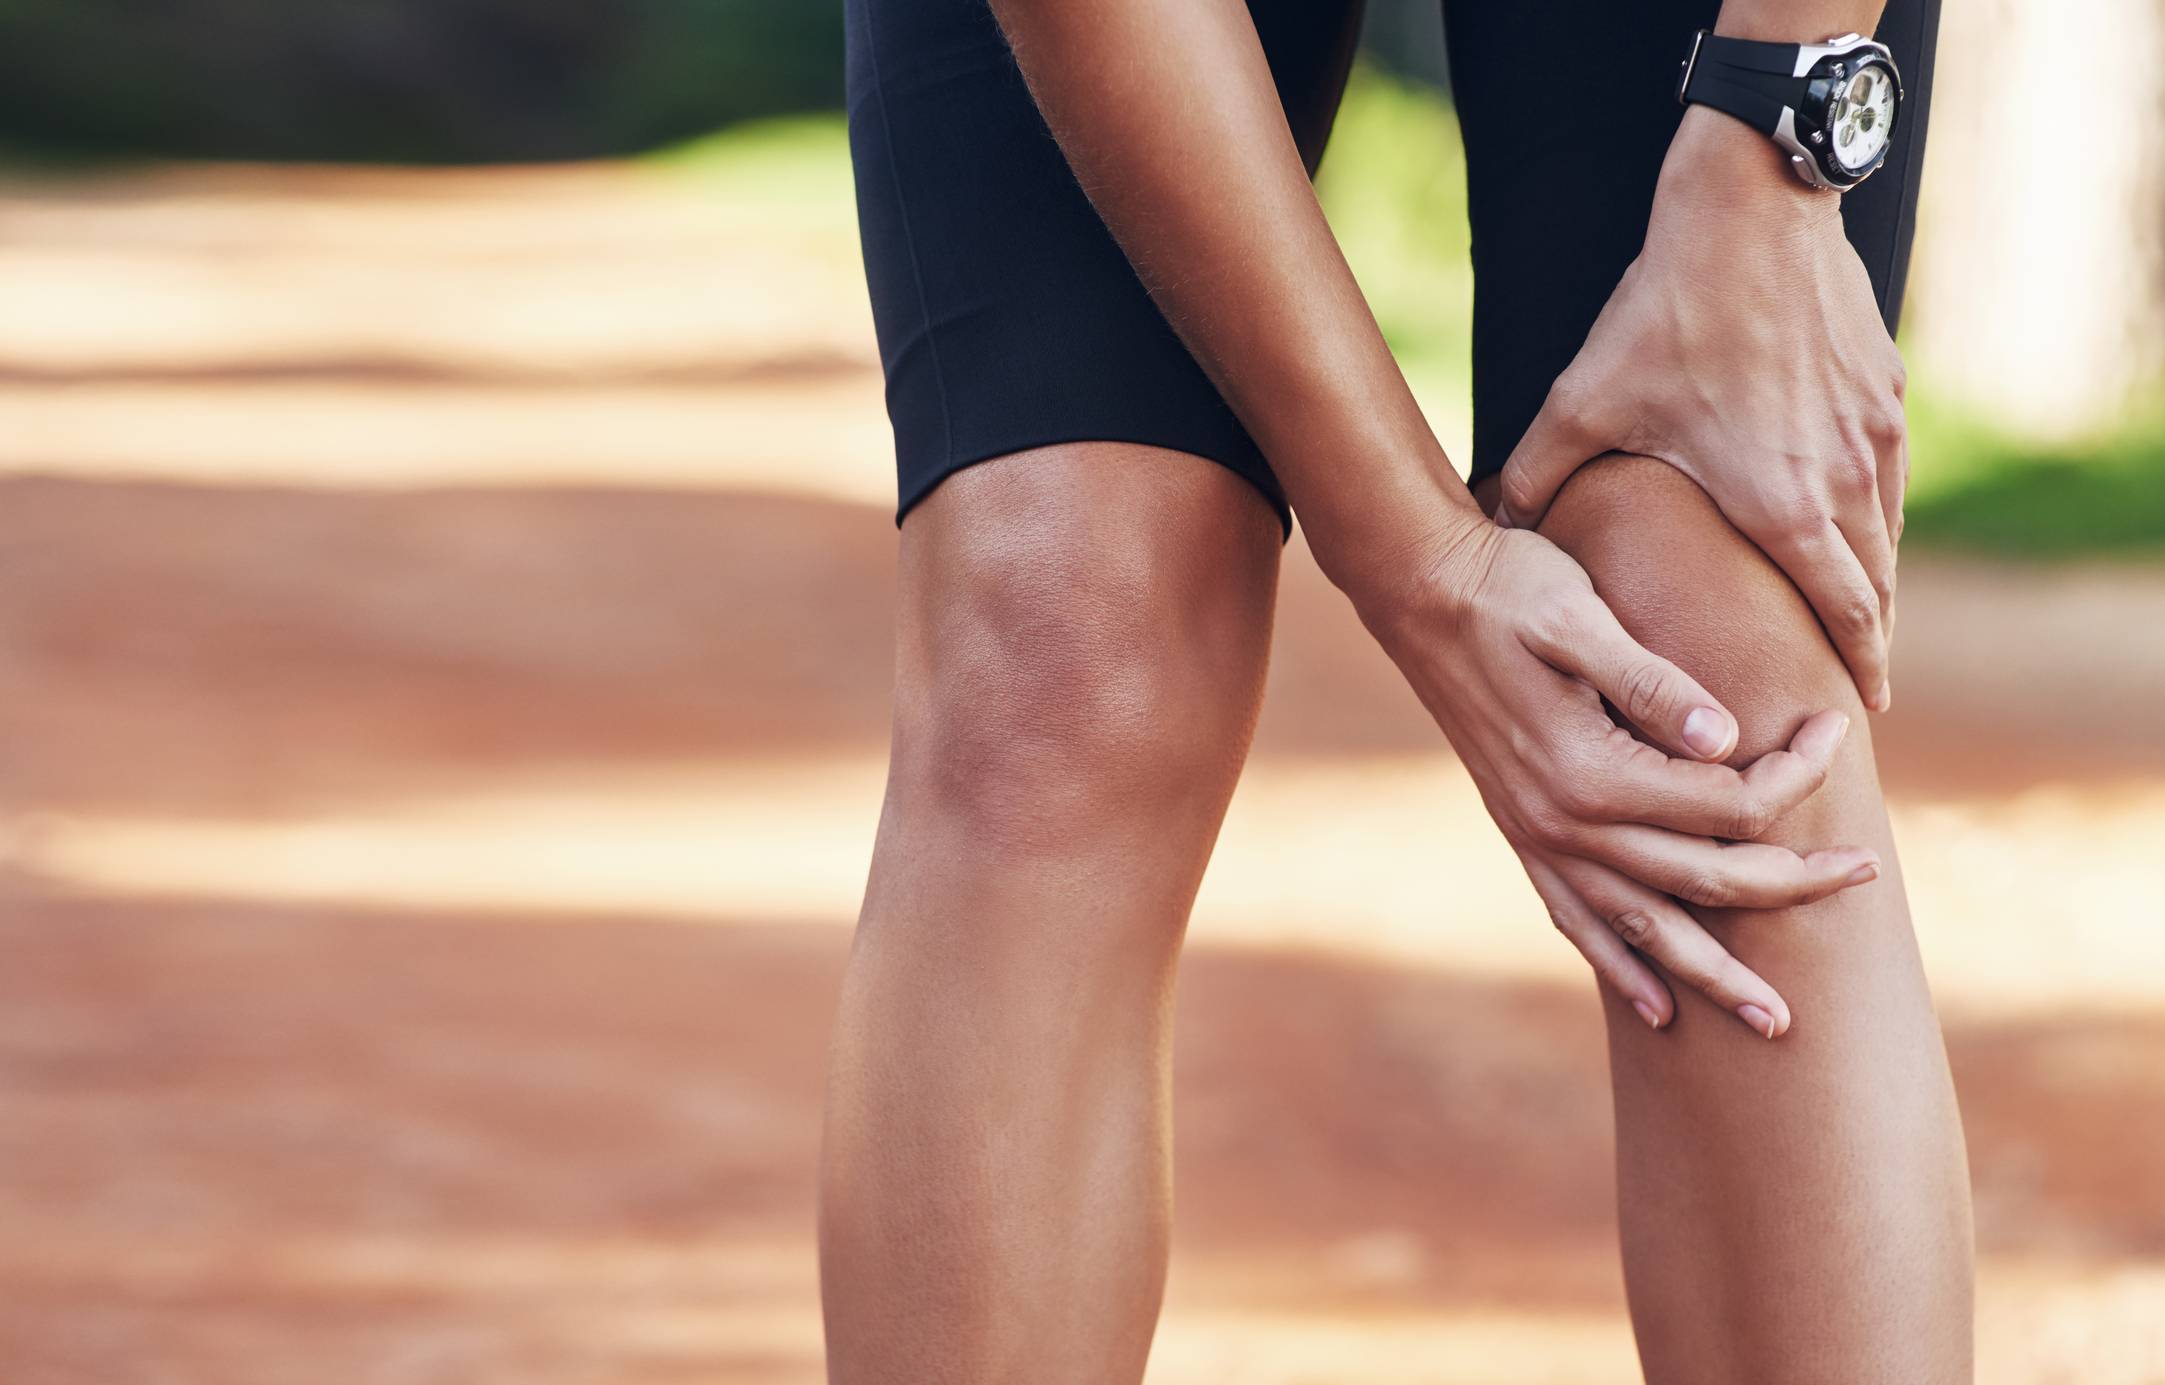 Береги колени смолоду: как сохранить здоровье суставов